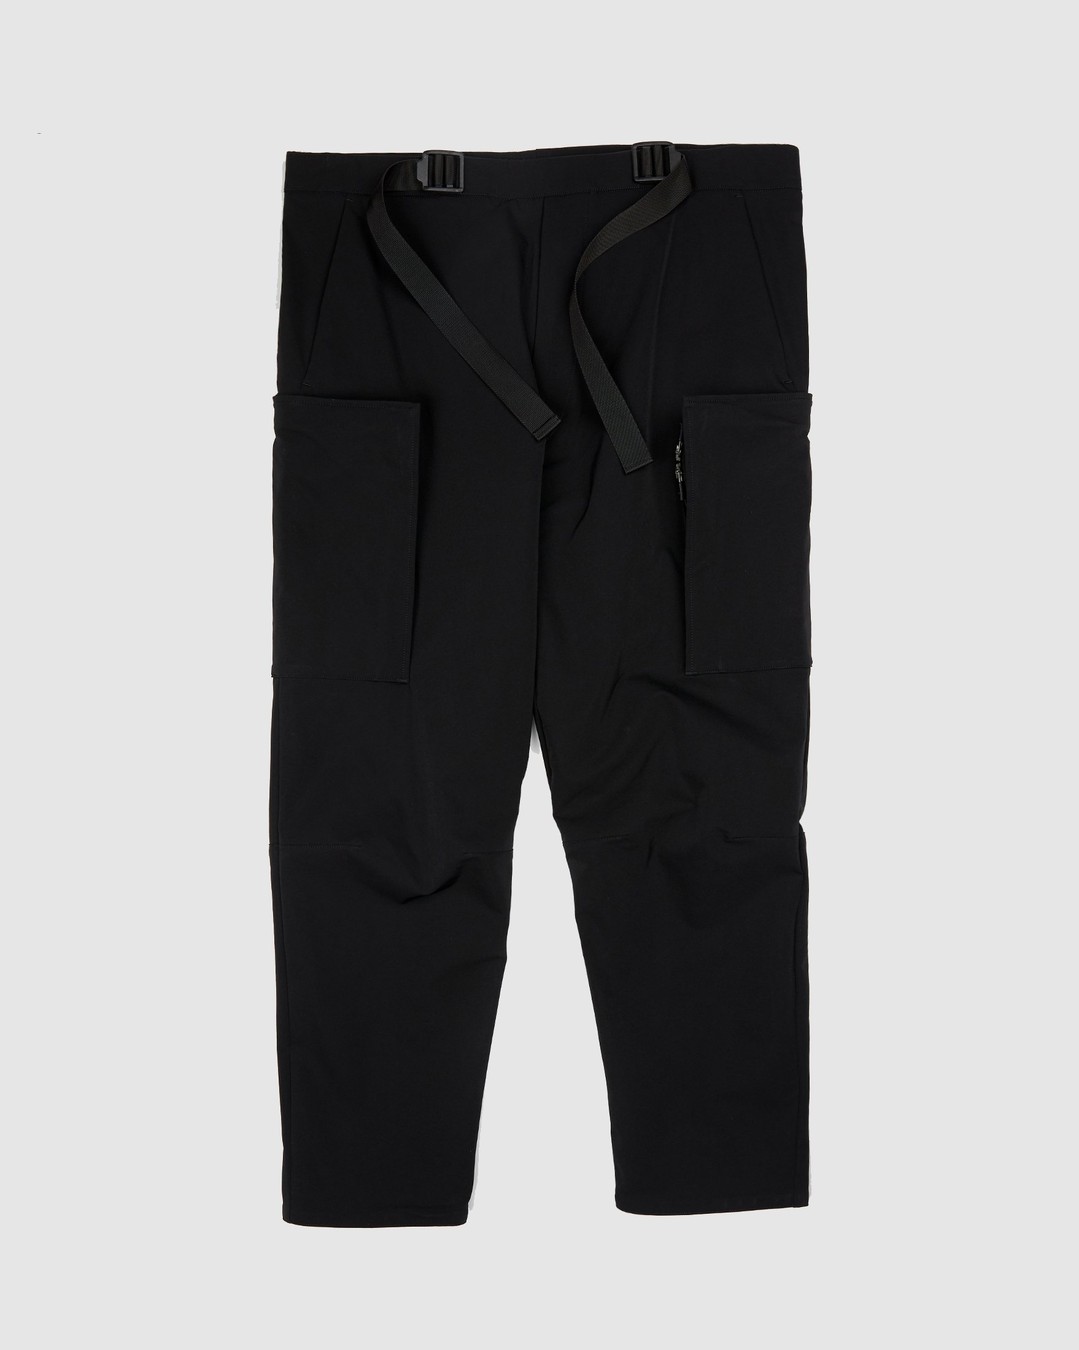 ACRONYM – P31A DS Trouser Black - Pants - Black - Image 1